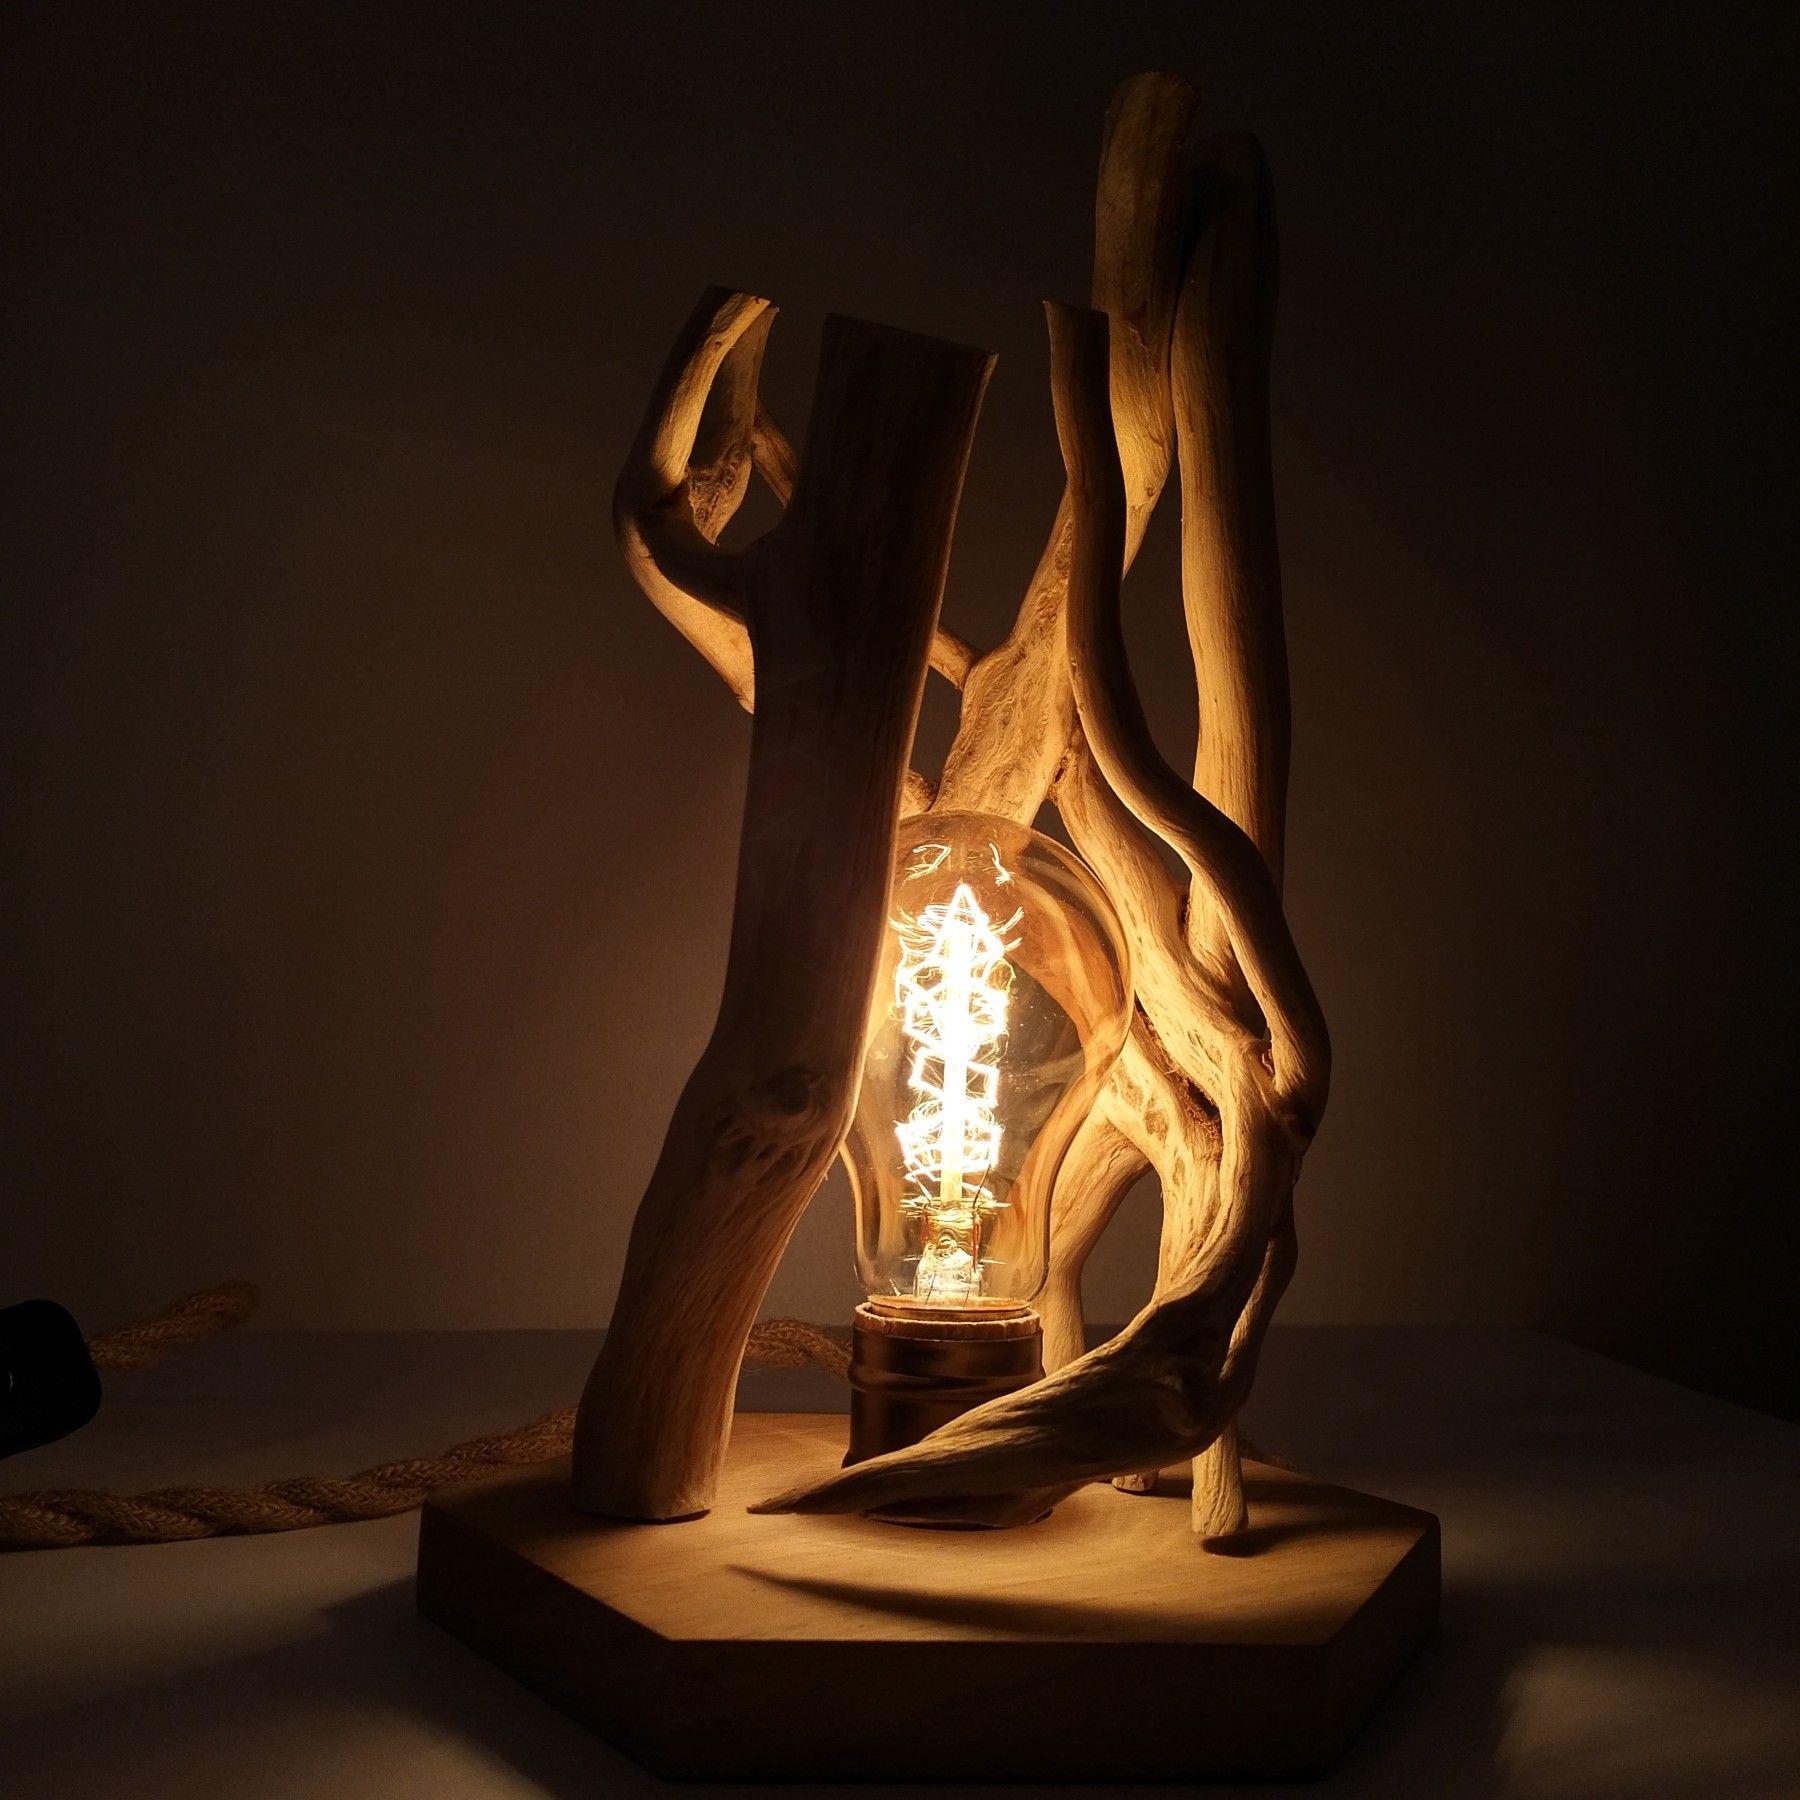 Lampe en bois - Collection chêne et lierre